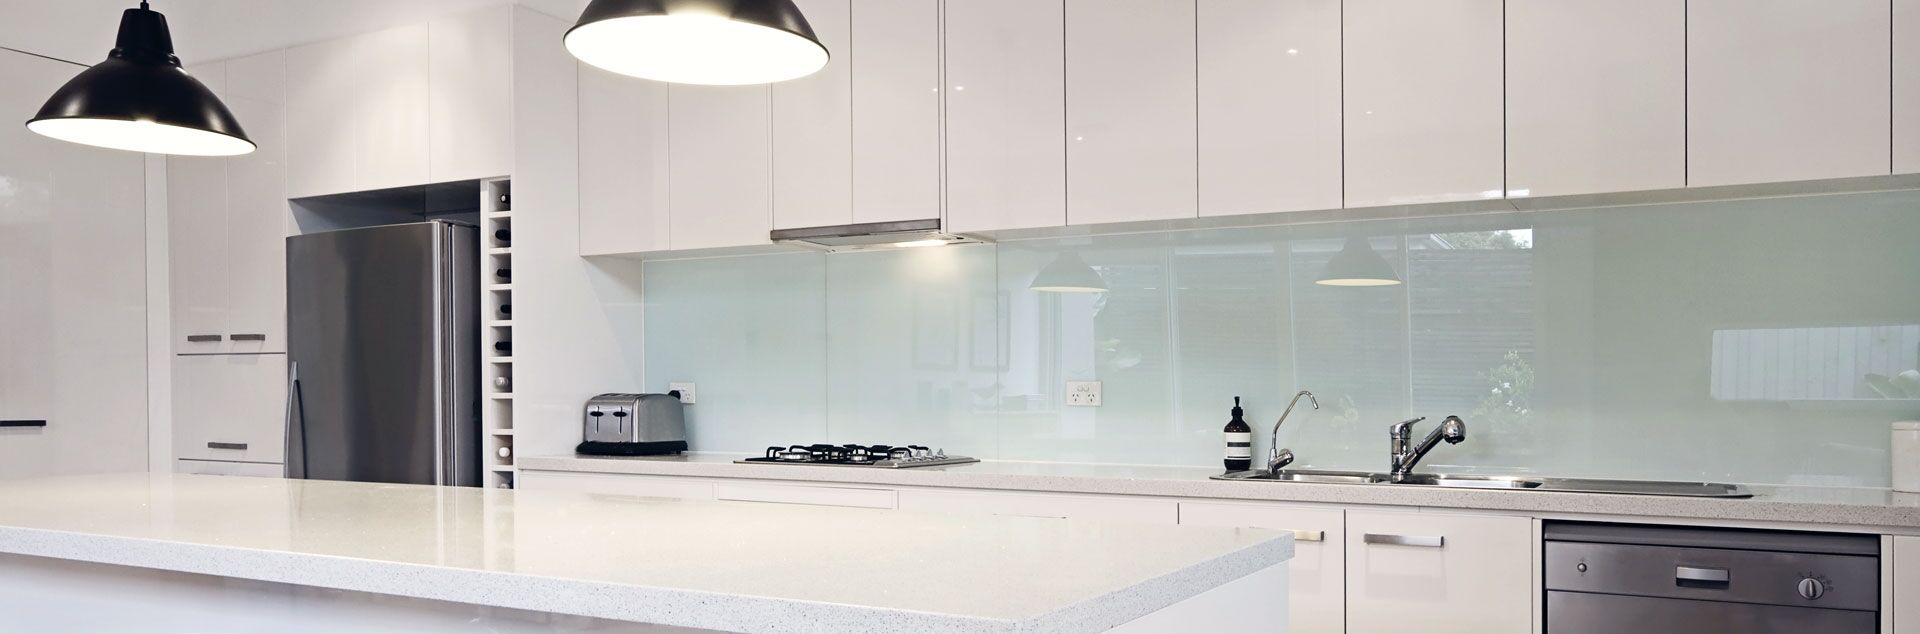 Beautiful Kitchen Splashback Ideas To Copy Glass Splashbacks | My XXX ...